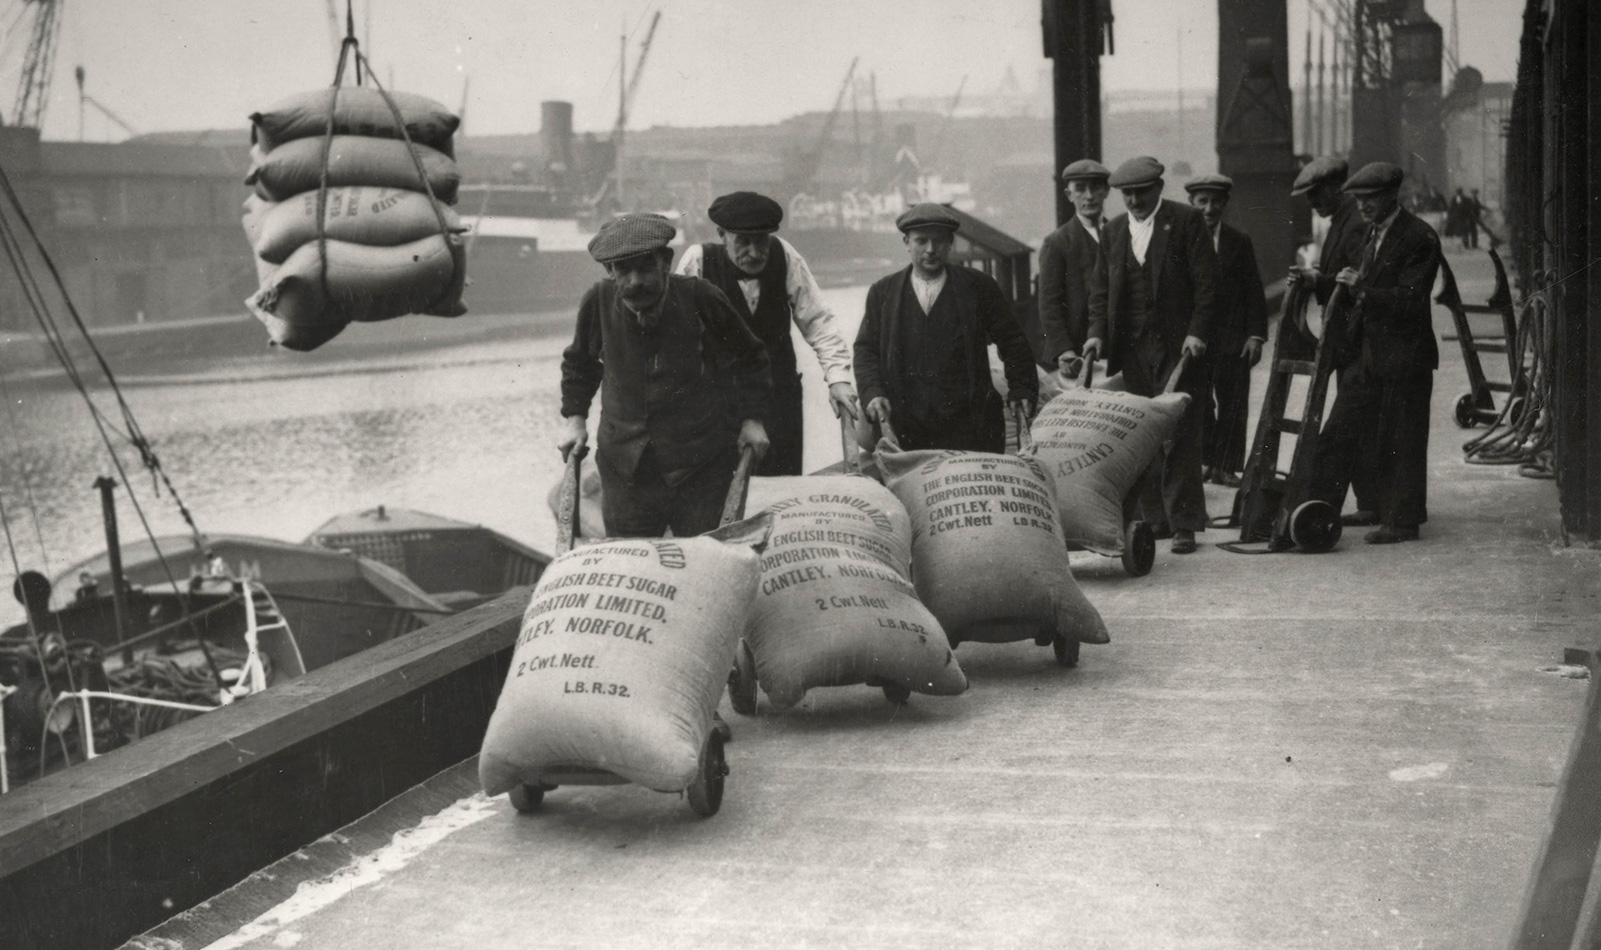 Dockers at London Dock transporting sugar bags, 1920